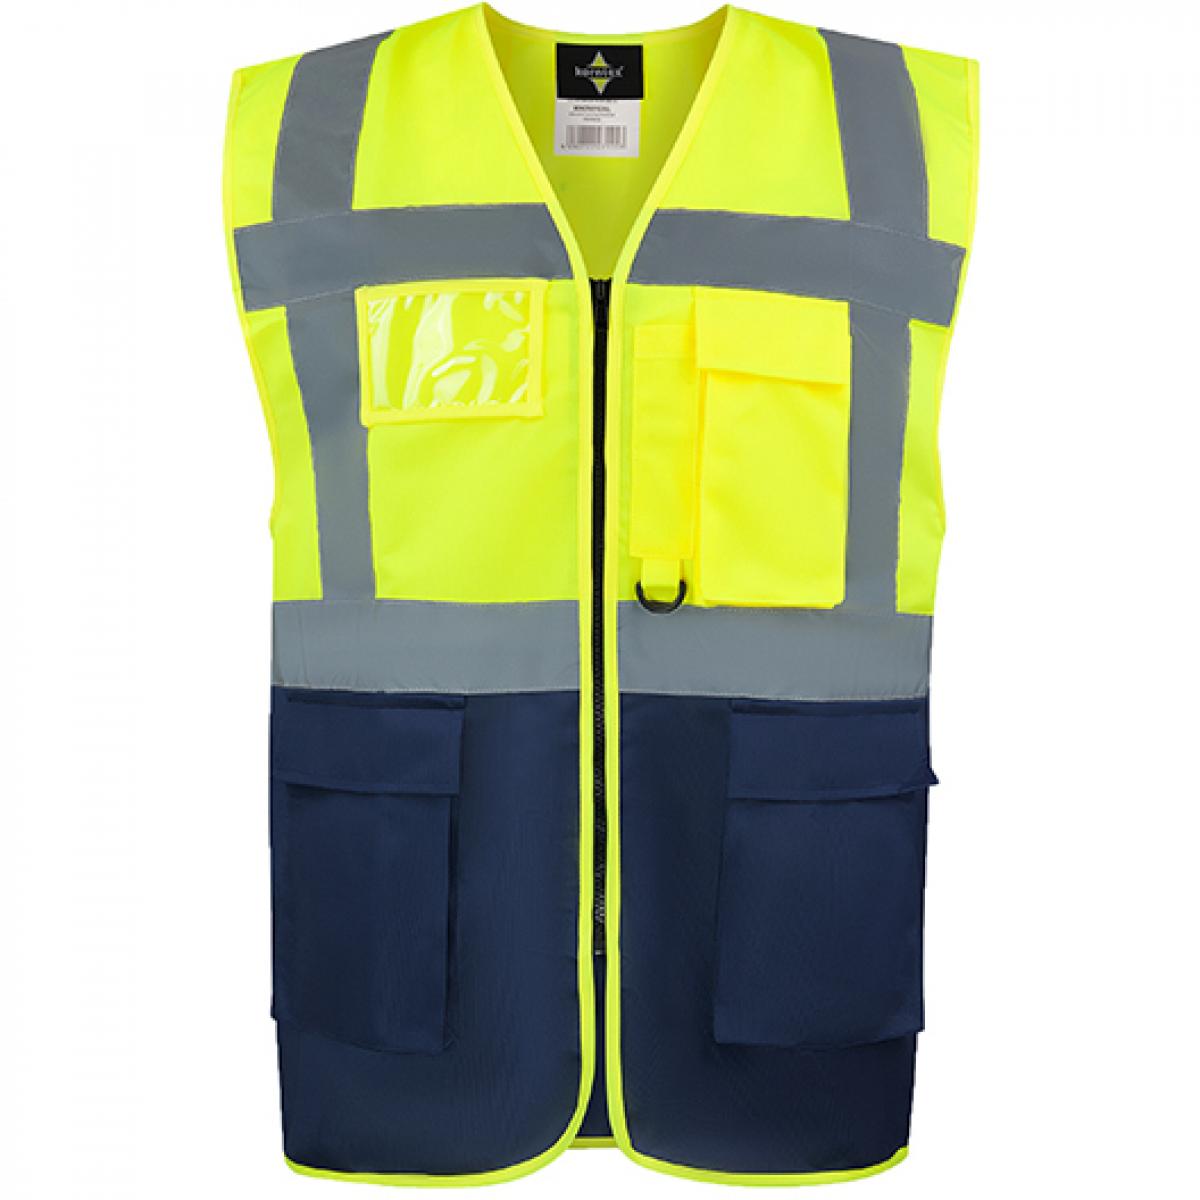 Hersteller: Korntex Herstellernummer: KXCMF Artikelbezeichnung: Comfort Executive Multifunctional Safety Vest Hamburg Farbe: Signal Yellow/Navy